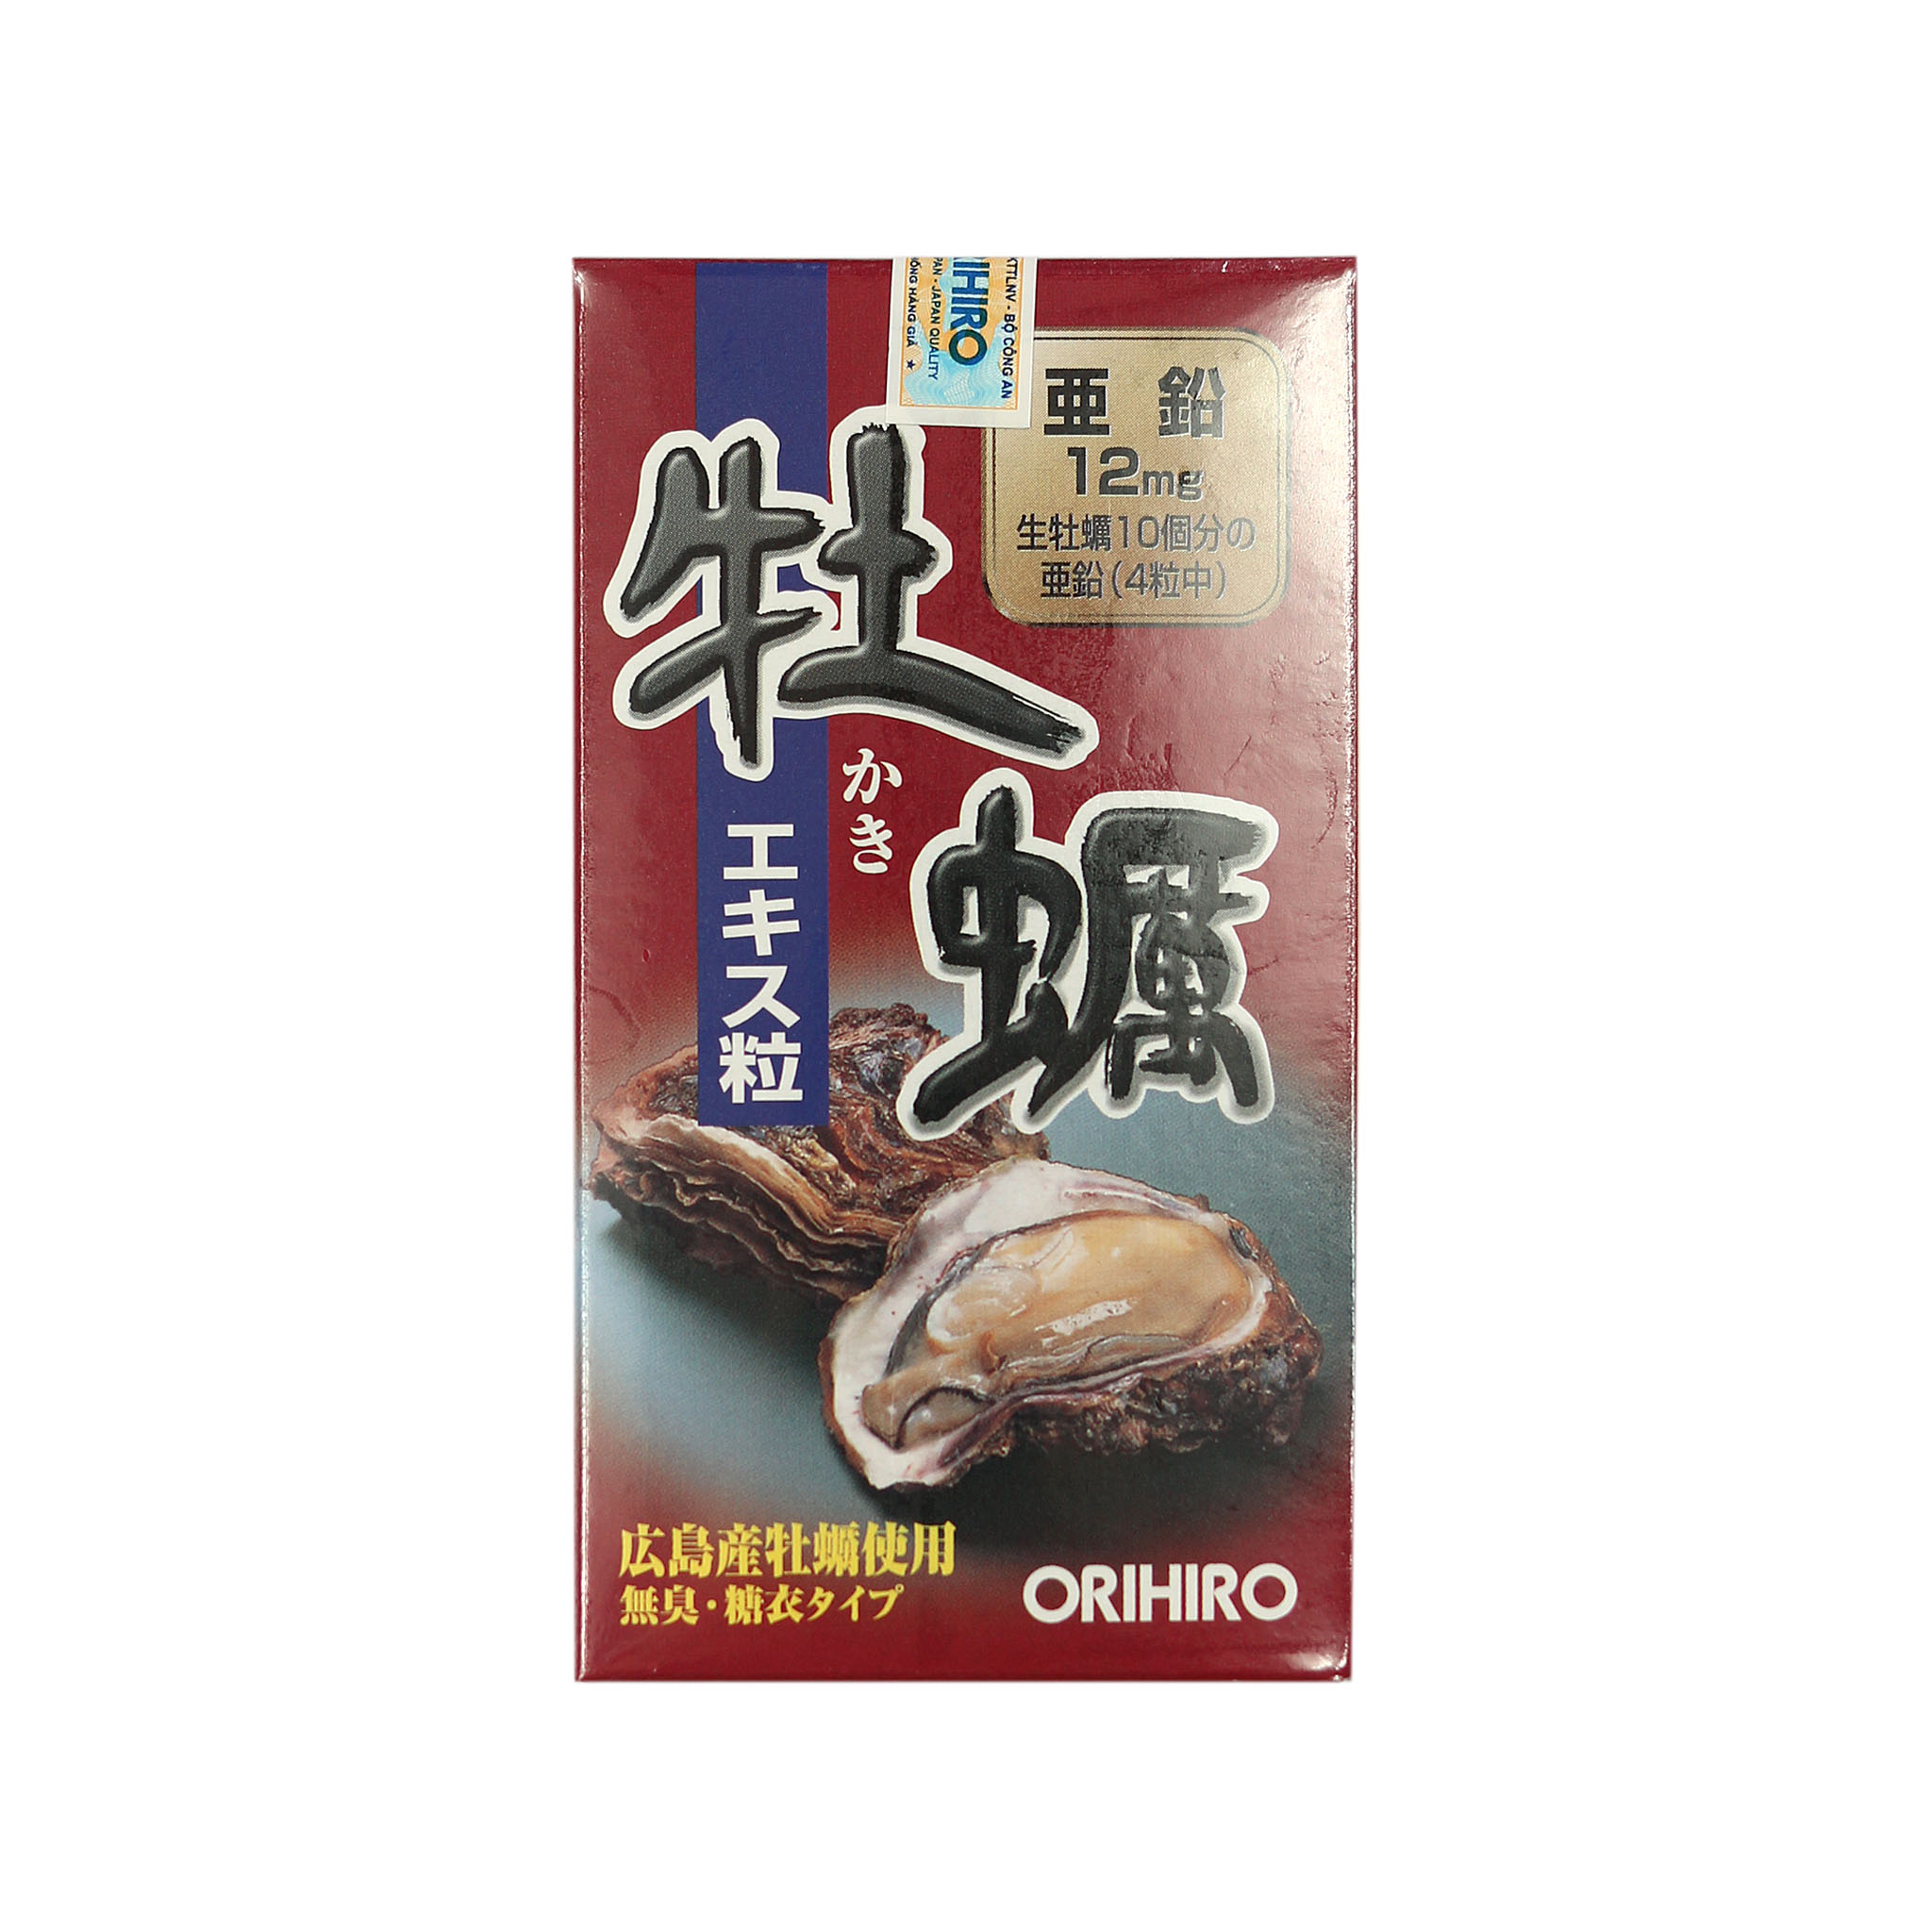 Viên uống tăng cường sinh lý nam Hàu tươi nhật bản Orihiro ( Orihiro New oyster extract tablet)